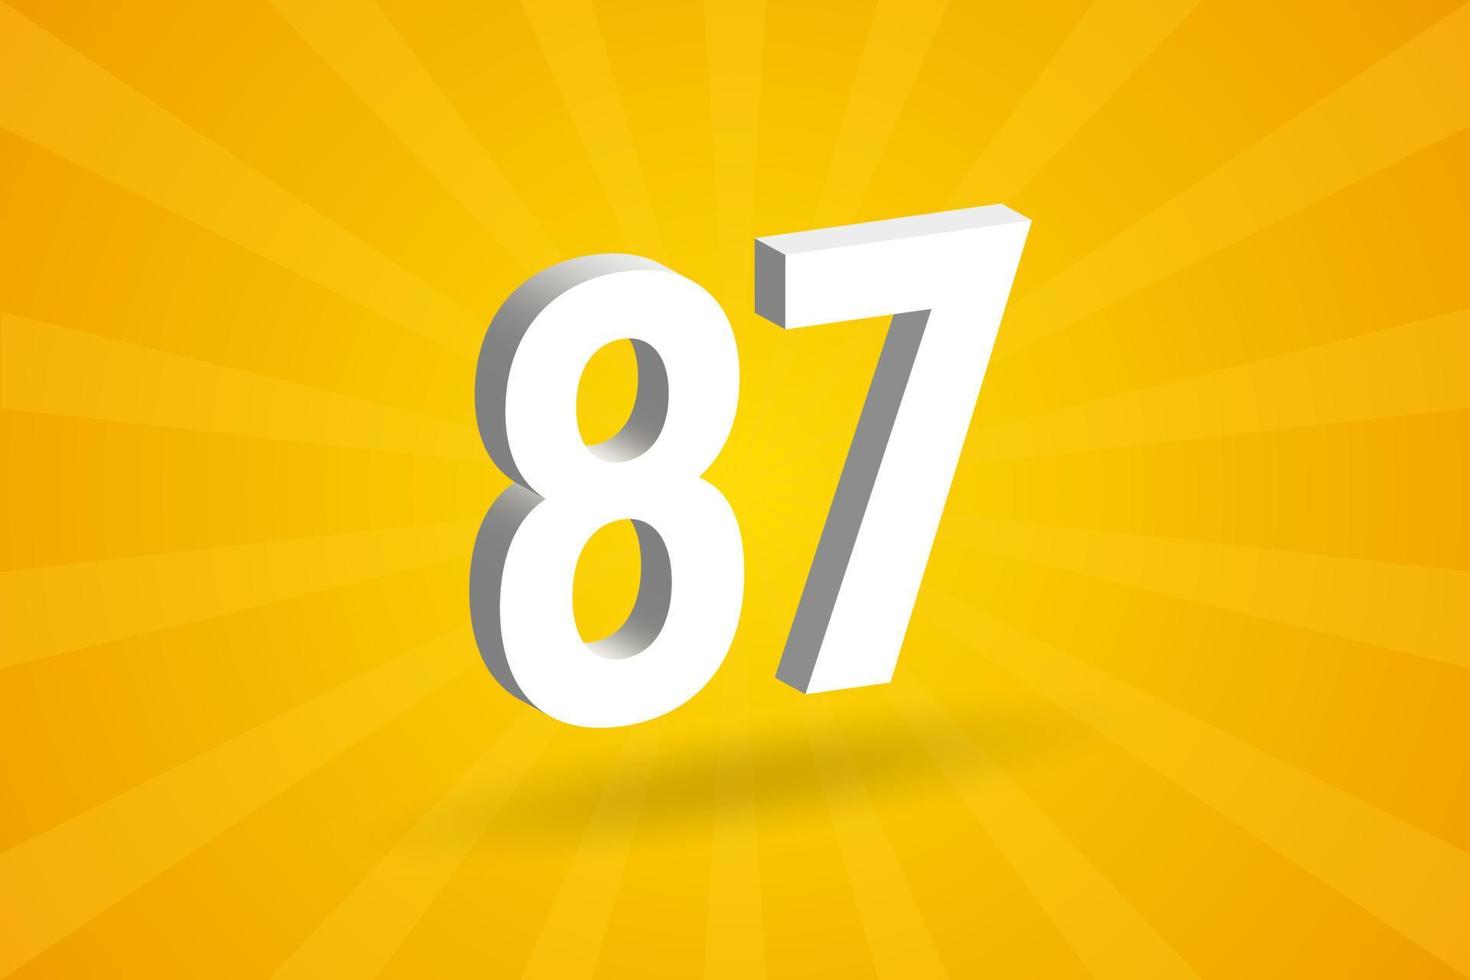 3d 87 numero font alfabeto. bianca 3d numero 87 con giallo sfondo vettore